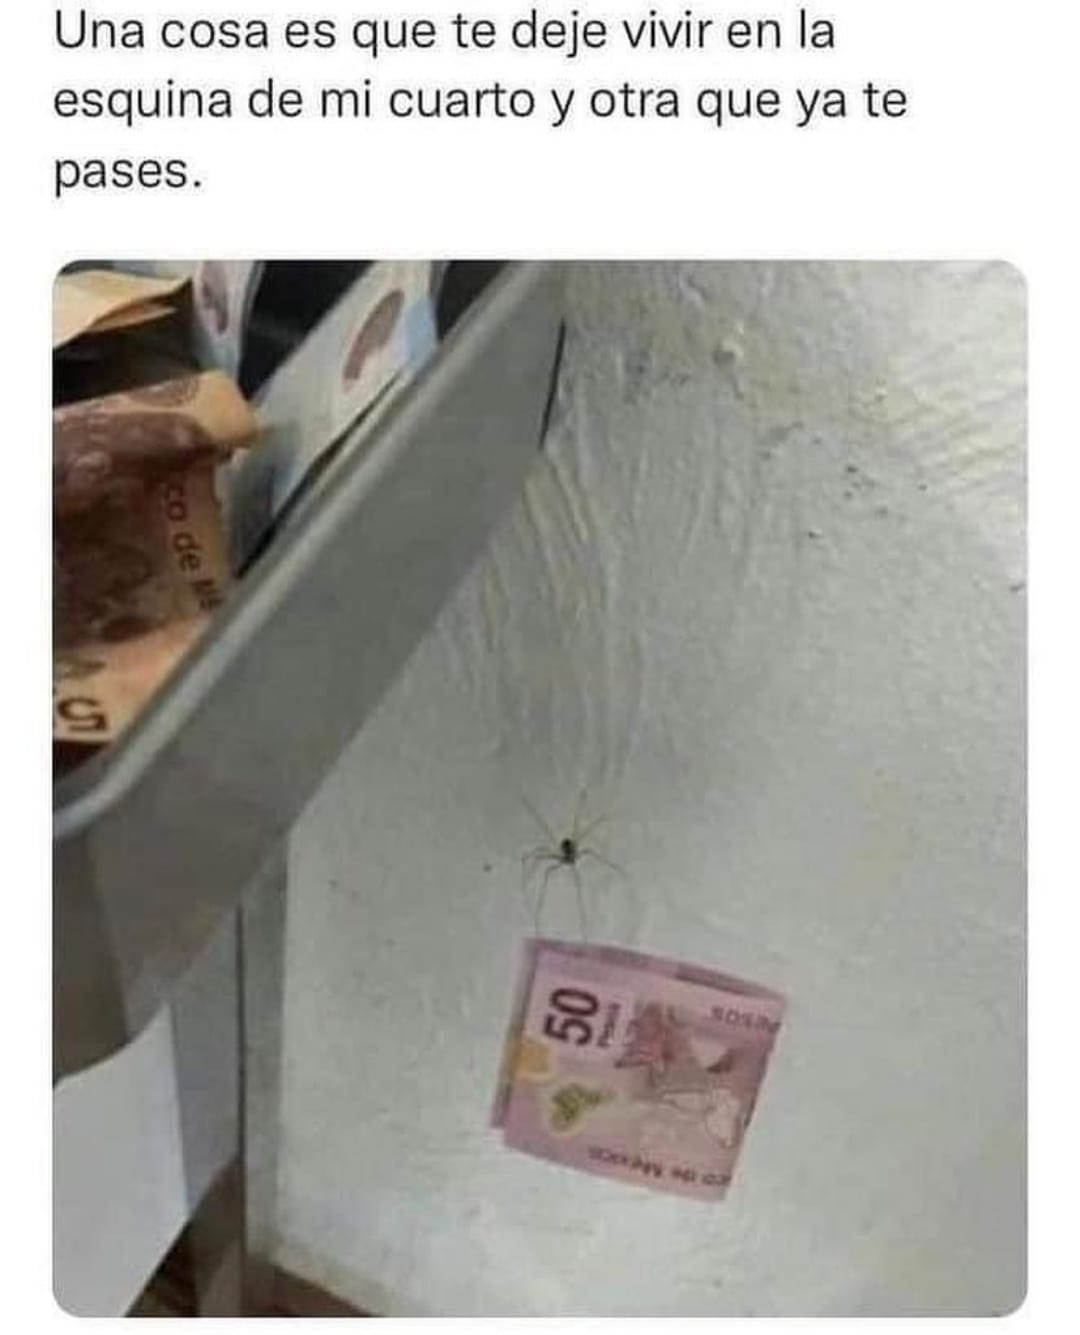 donde hay arañas hay dinero - meme